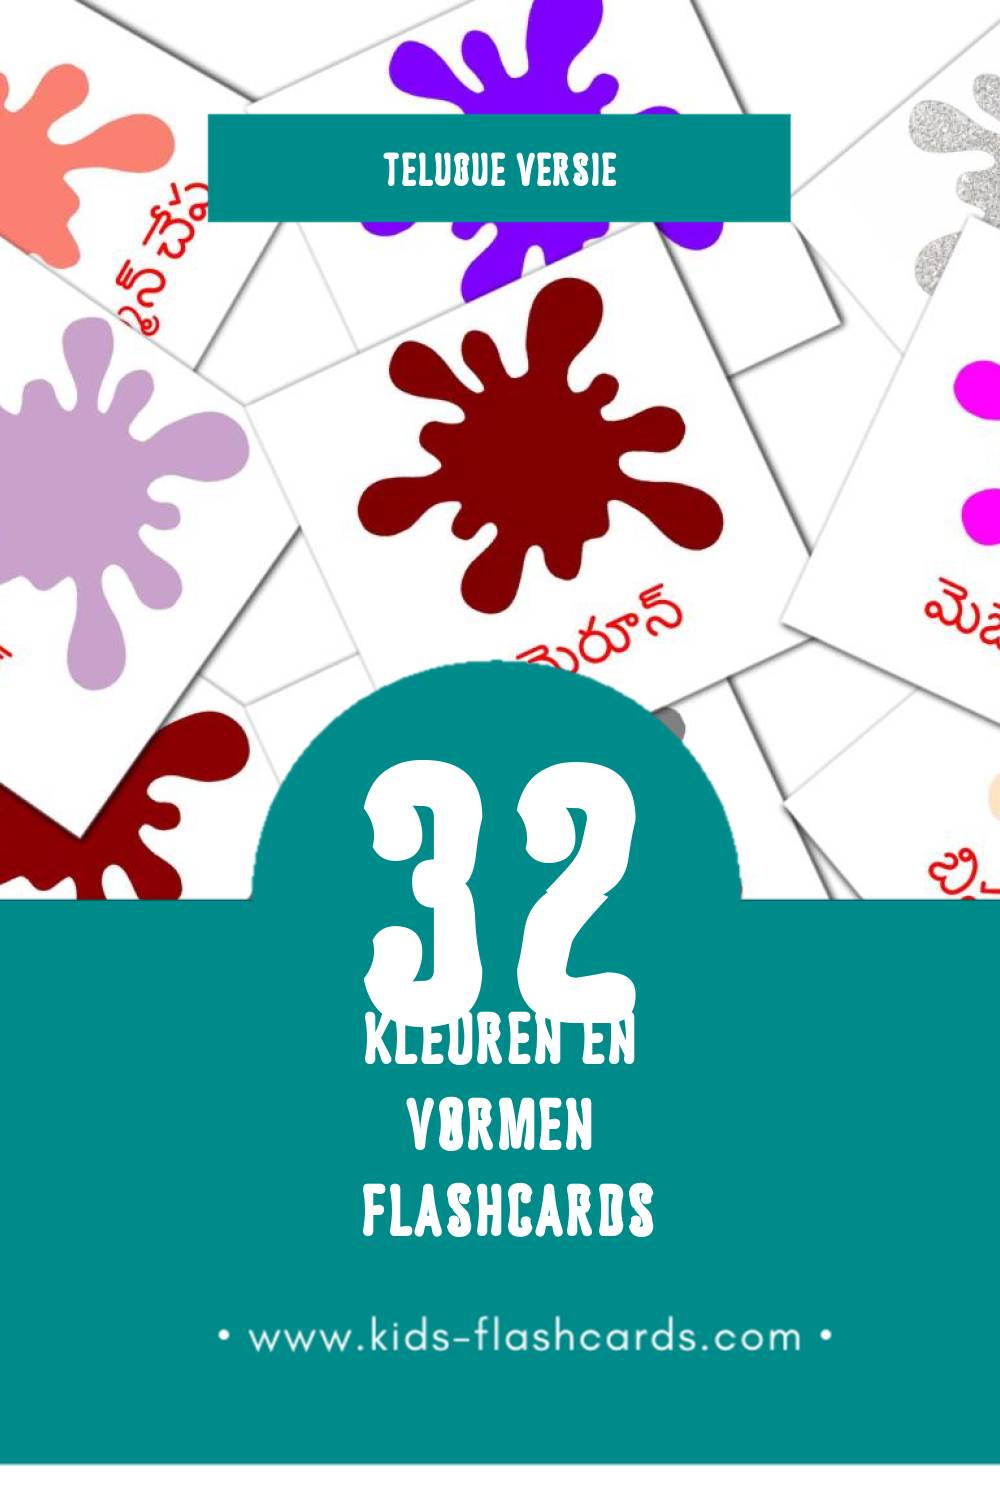 Visuele రంగులు మరియు ఆకారాలు Flashcards voor Kleuters (32 kaarten in het Telugu)